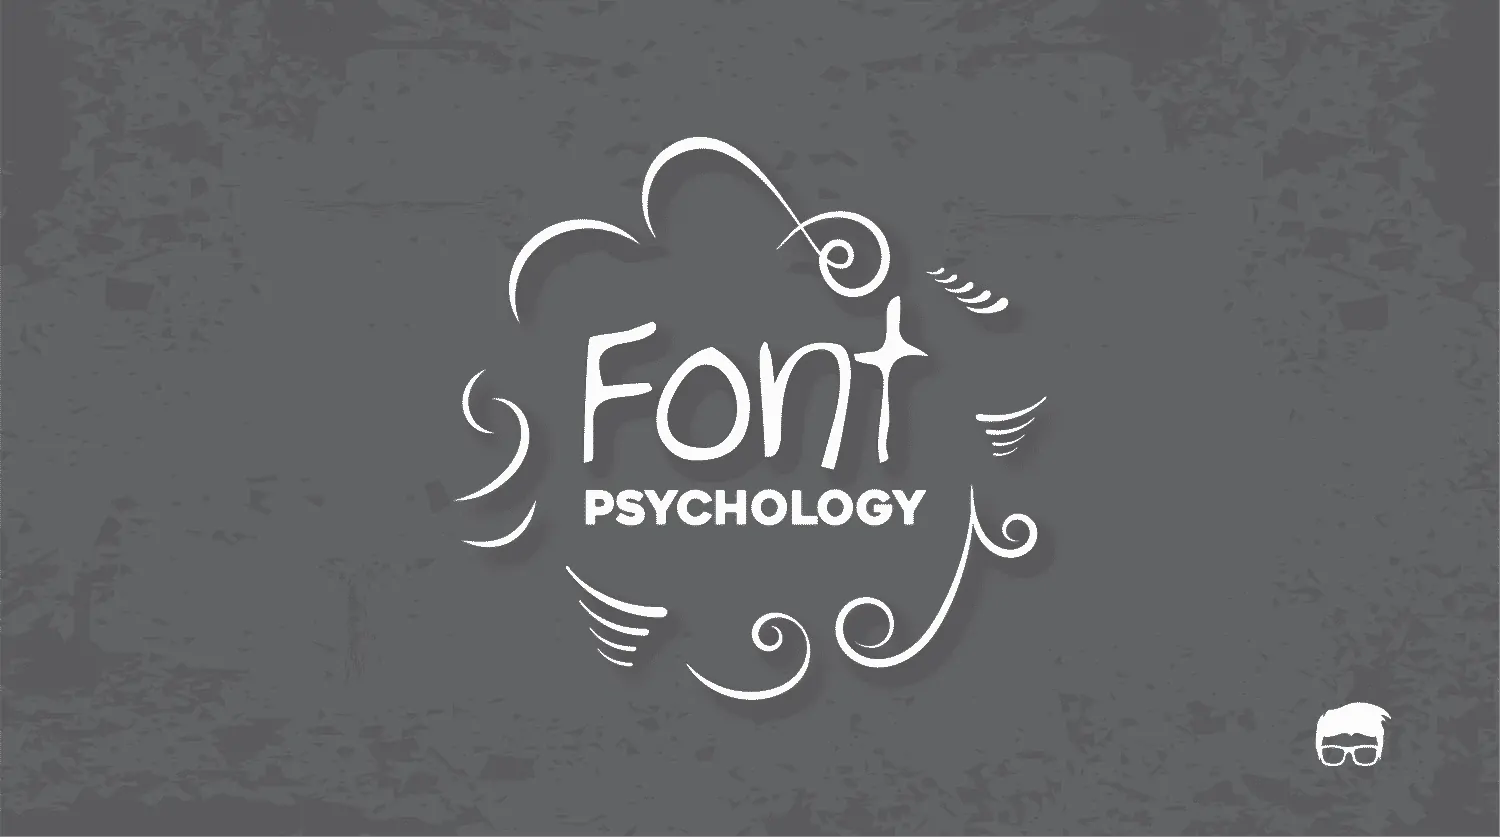 Font Psychology For Logo Design [Complete Guide]